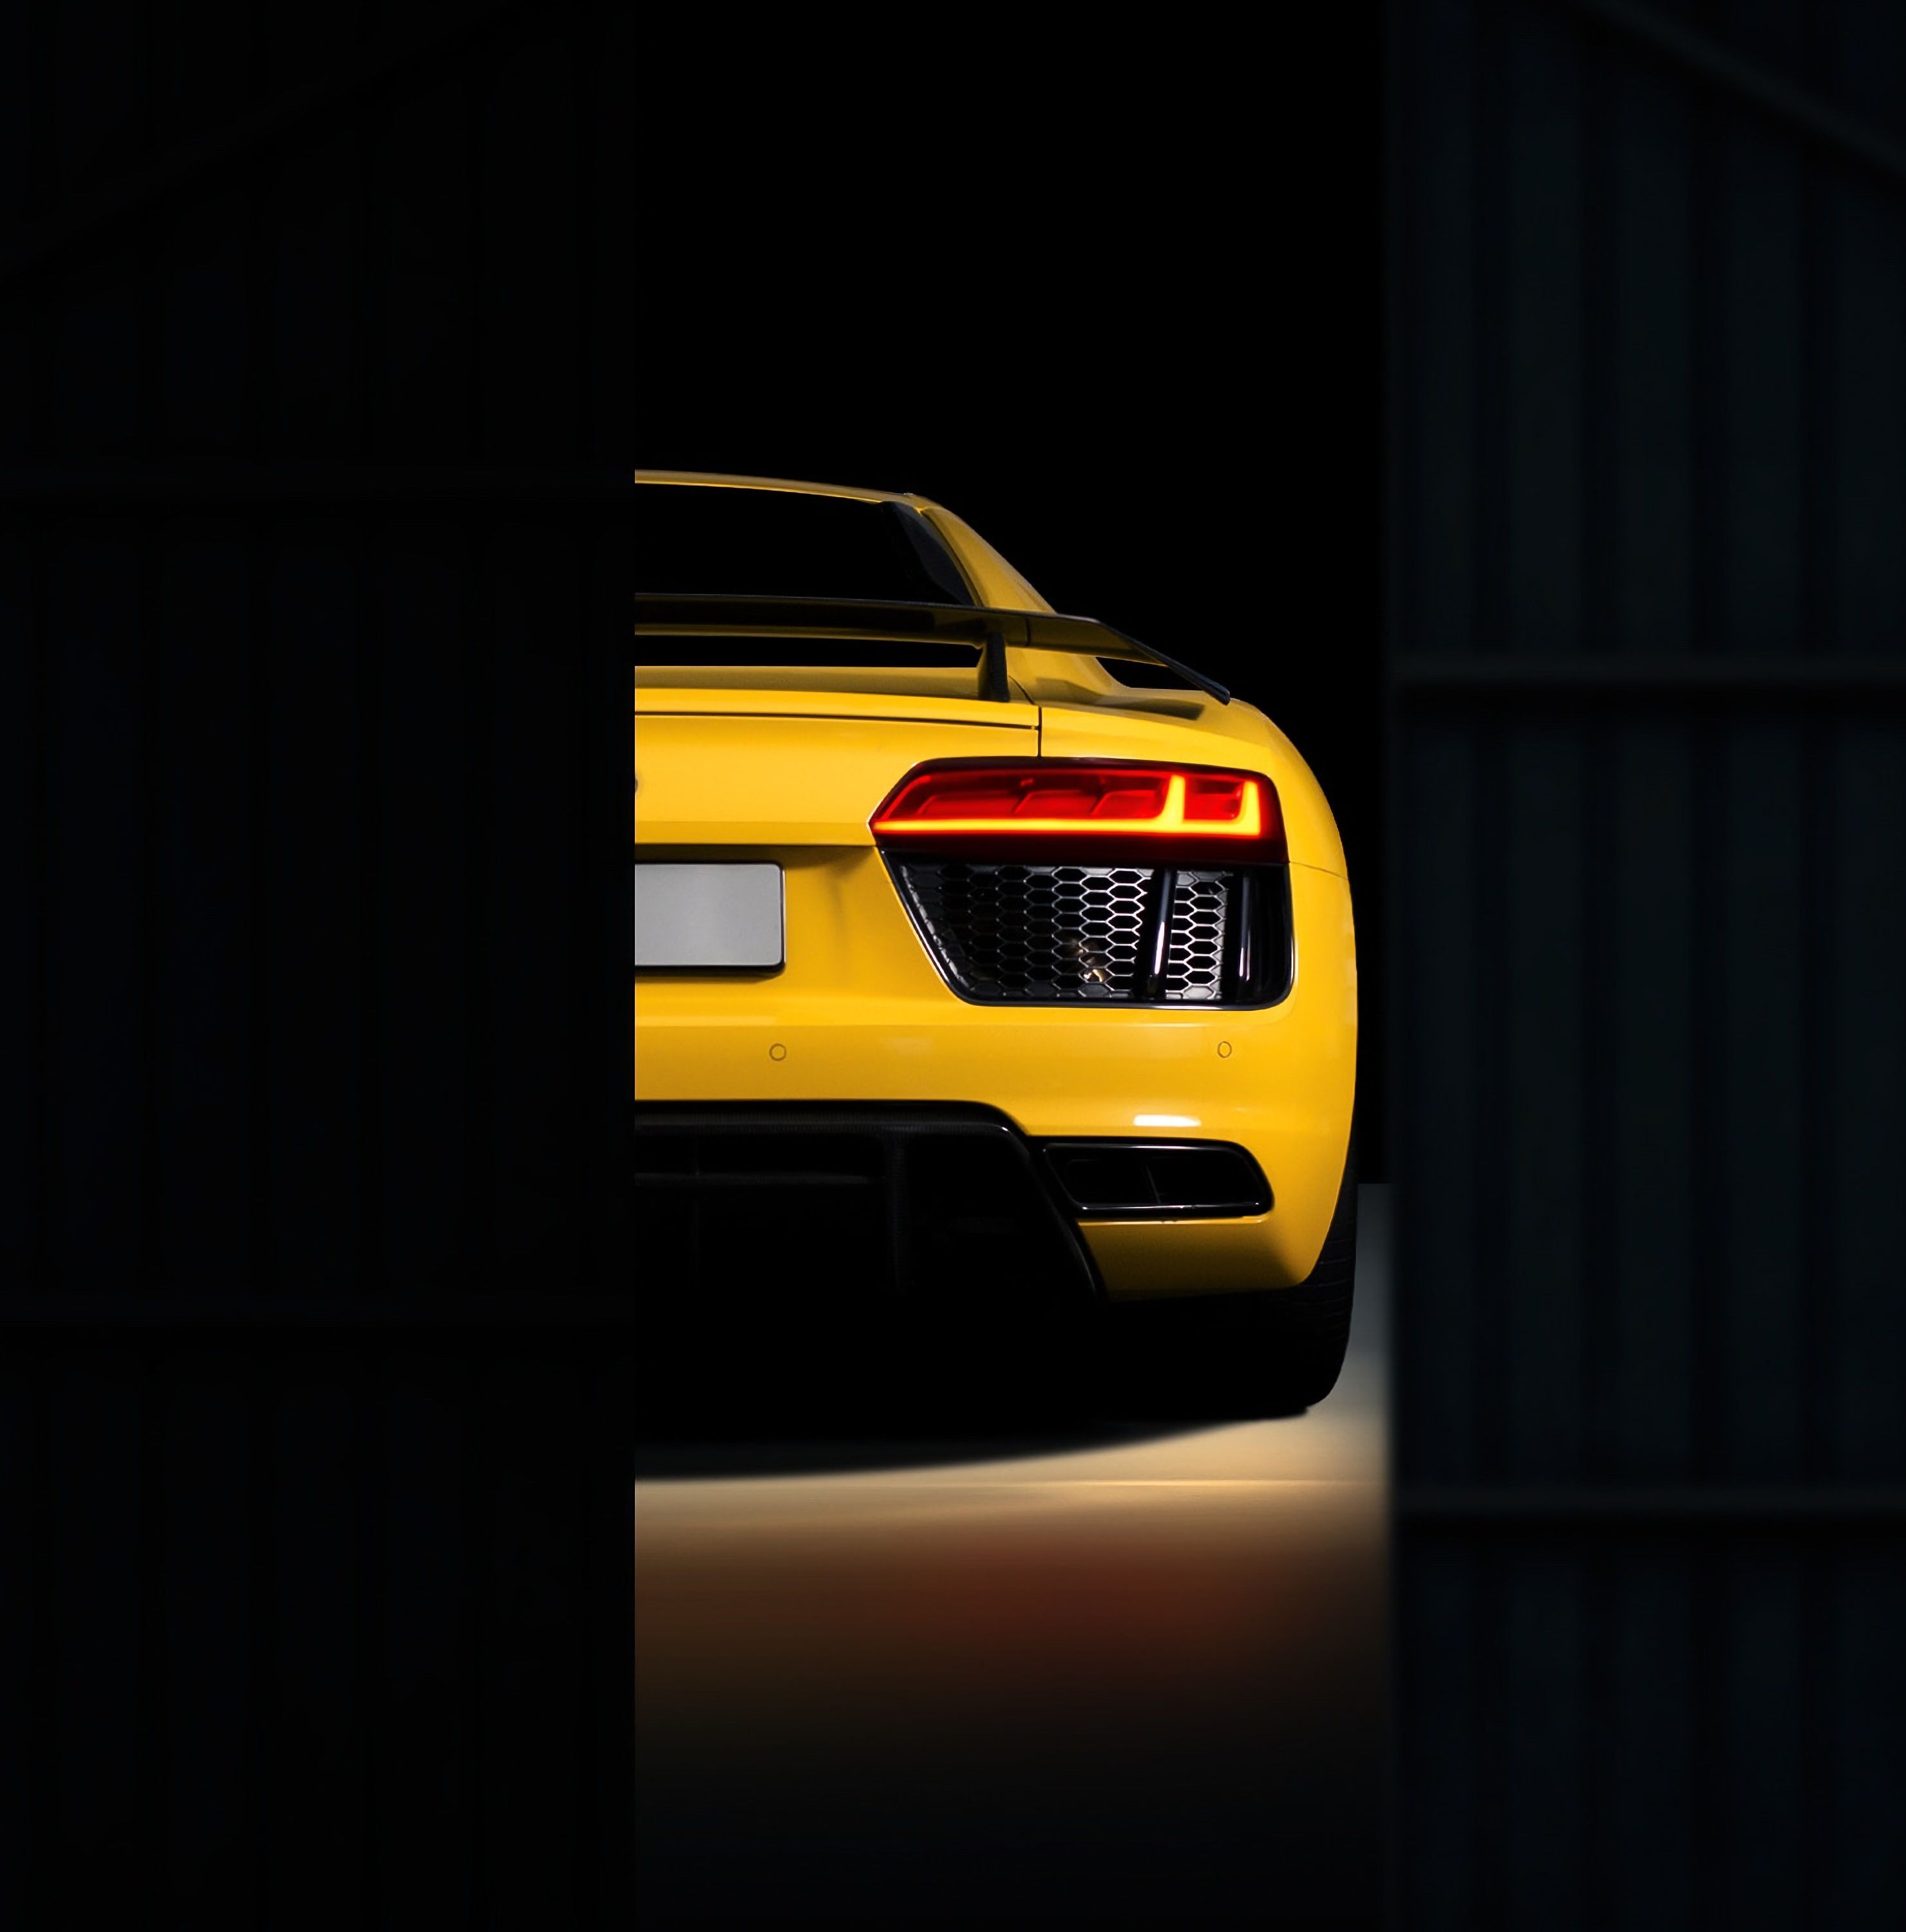 Audi Hintergrundbild 2960x3000. Laden Sie Das Audi R8 Hintergrundbild Für Ihr Handy In Hochwertigen, Hintergrundbildern Audi R8 Kostenlos Herunter